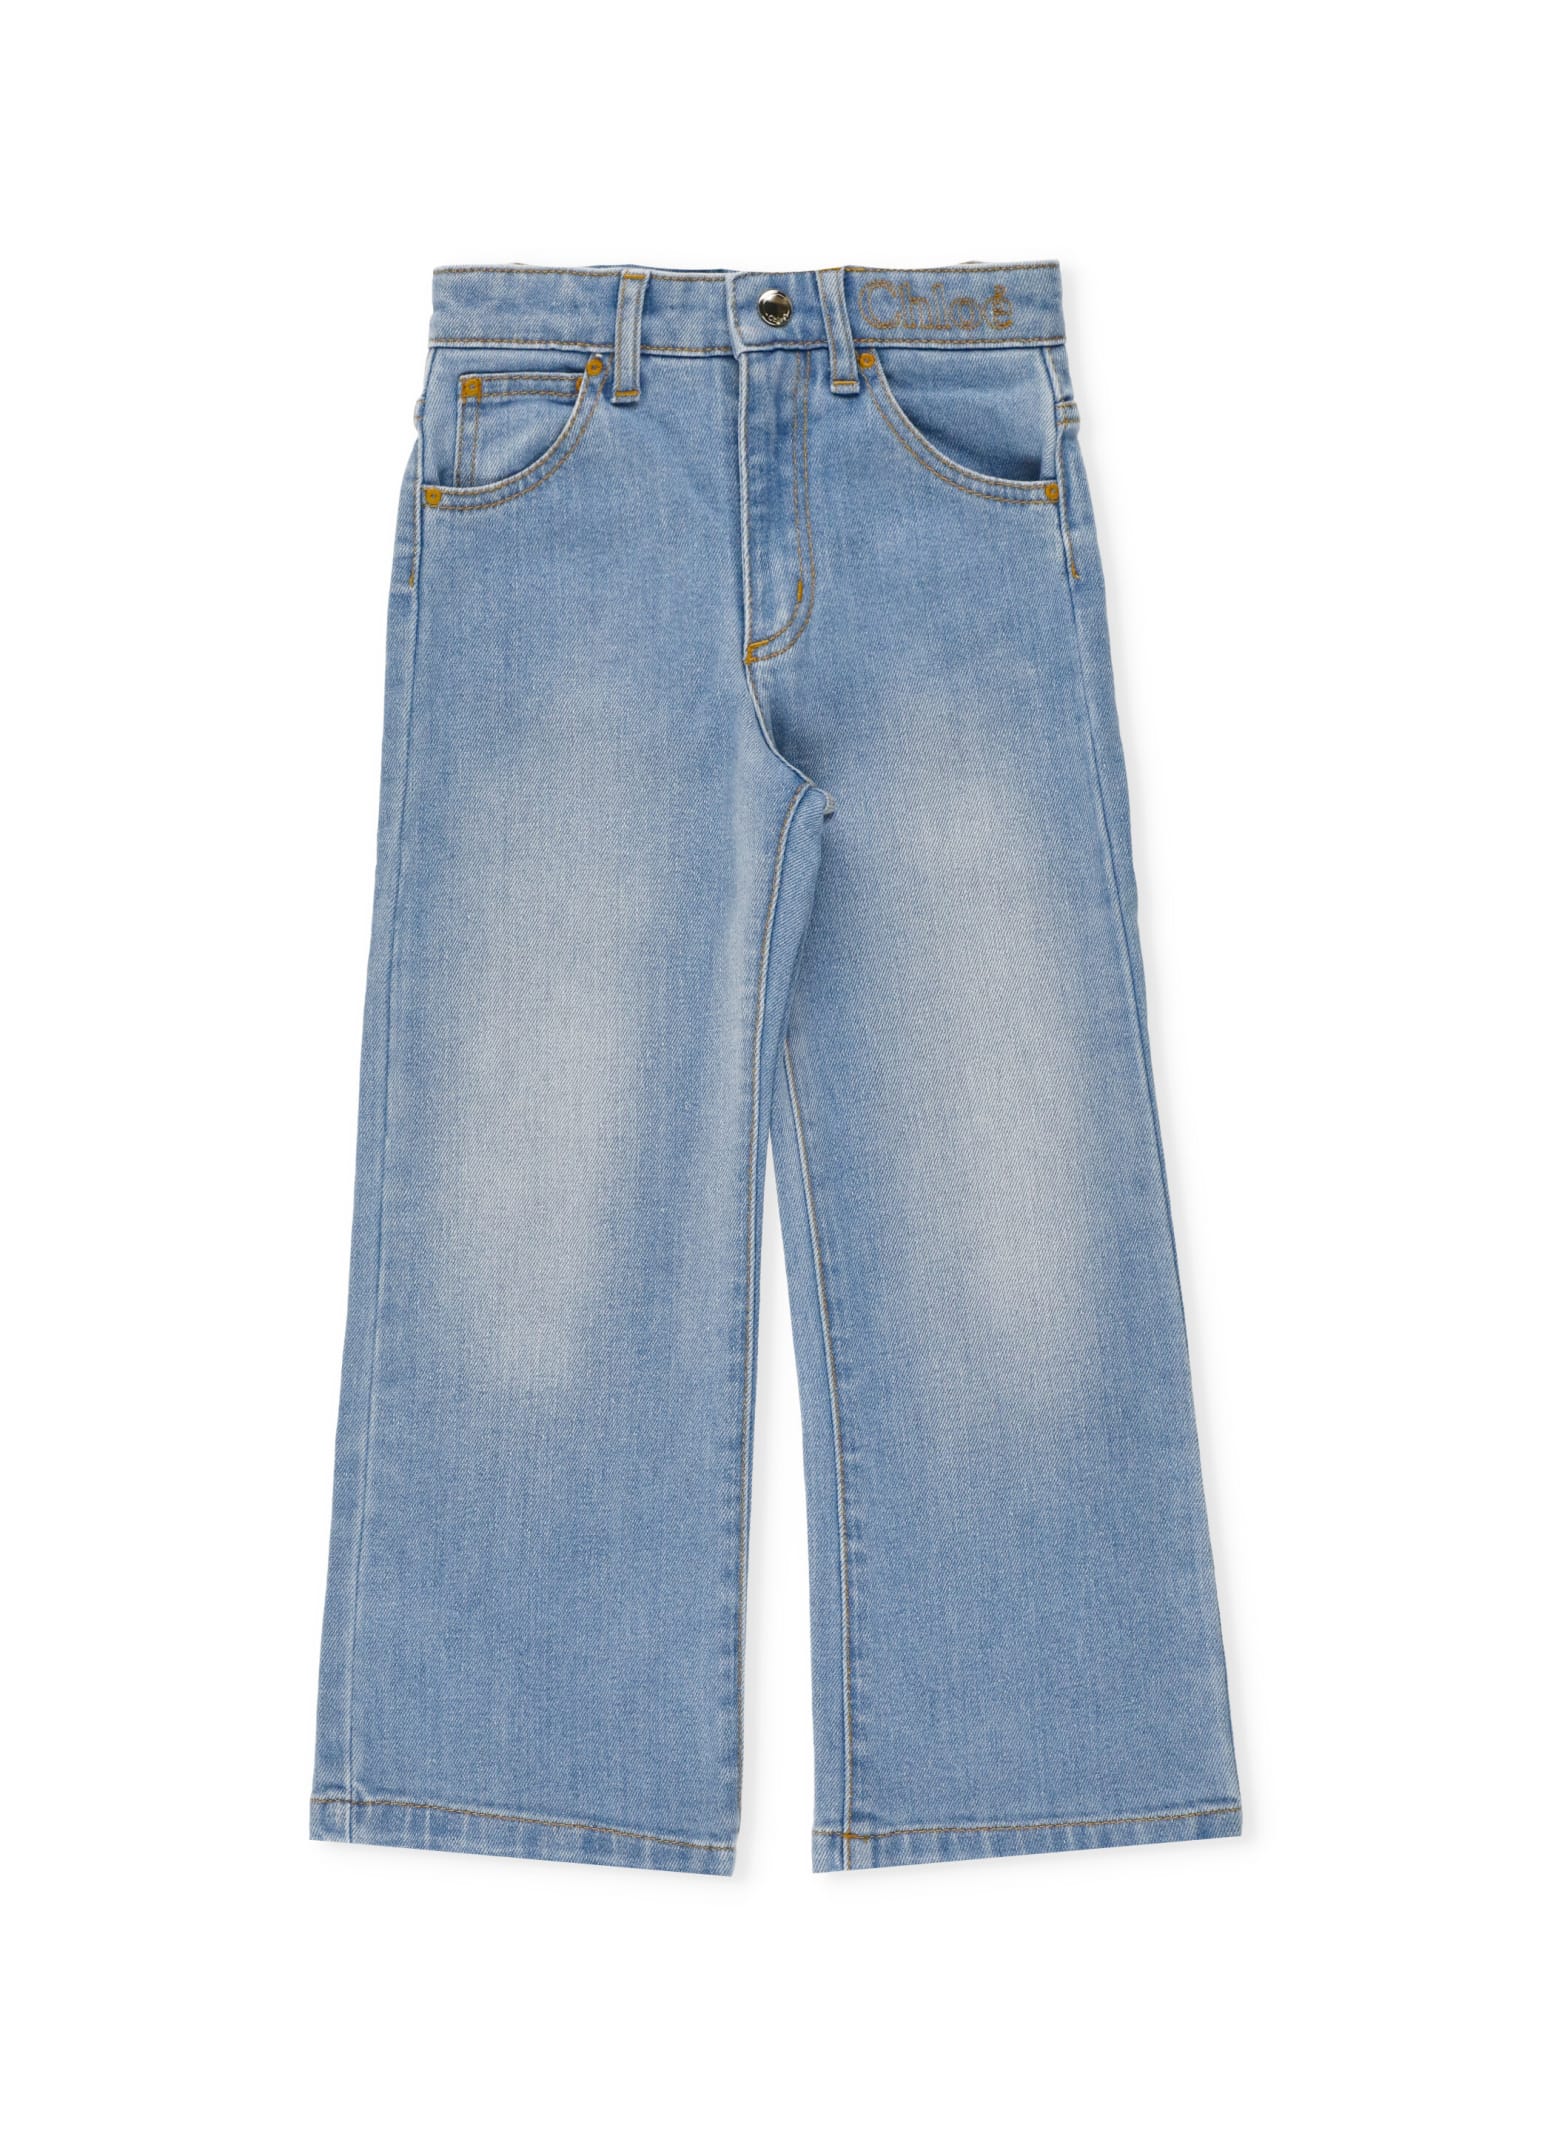 Chloé Cotton Jeans